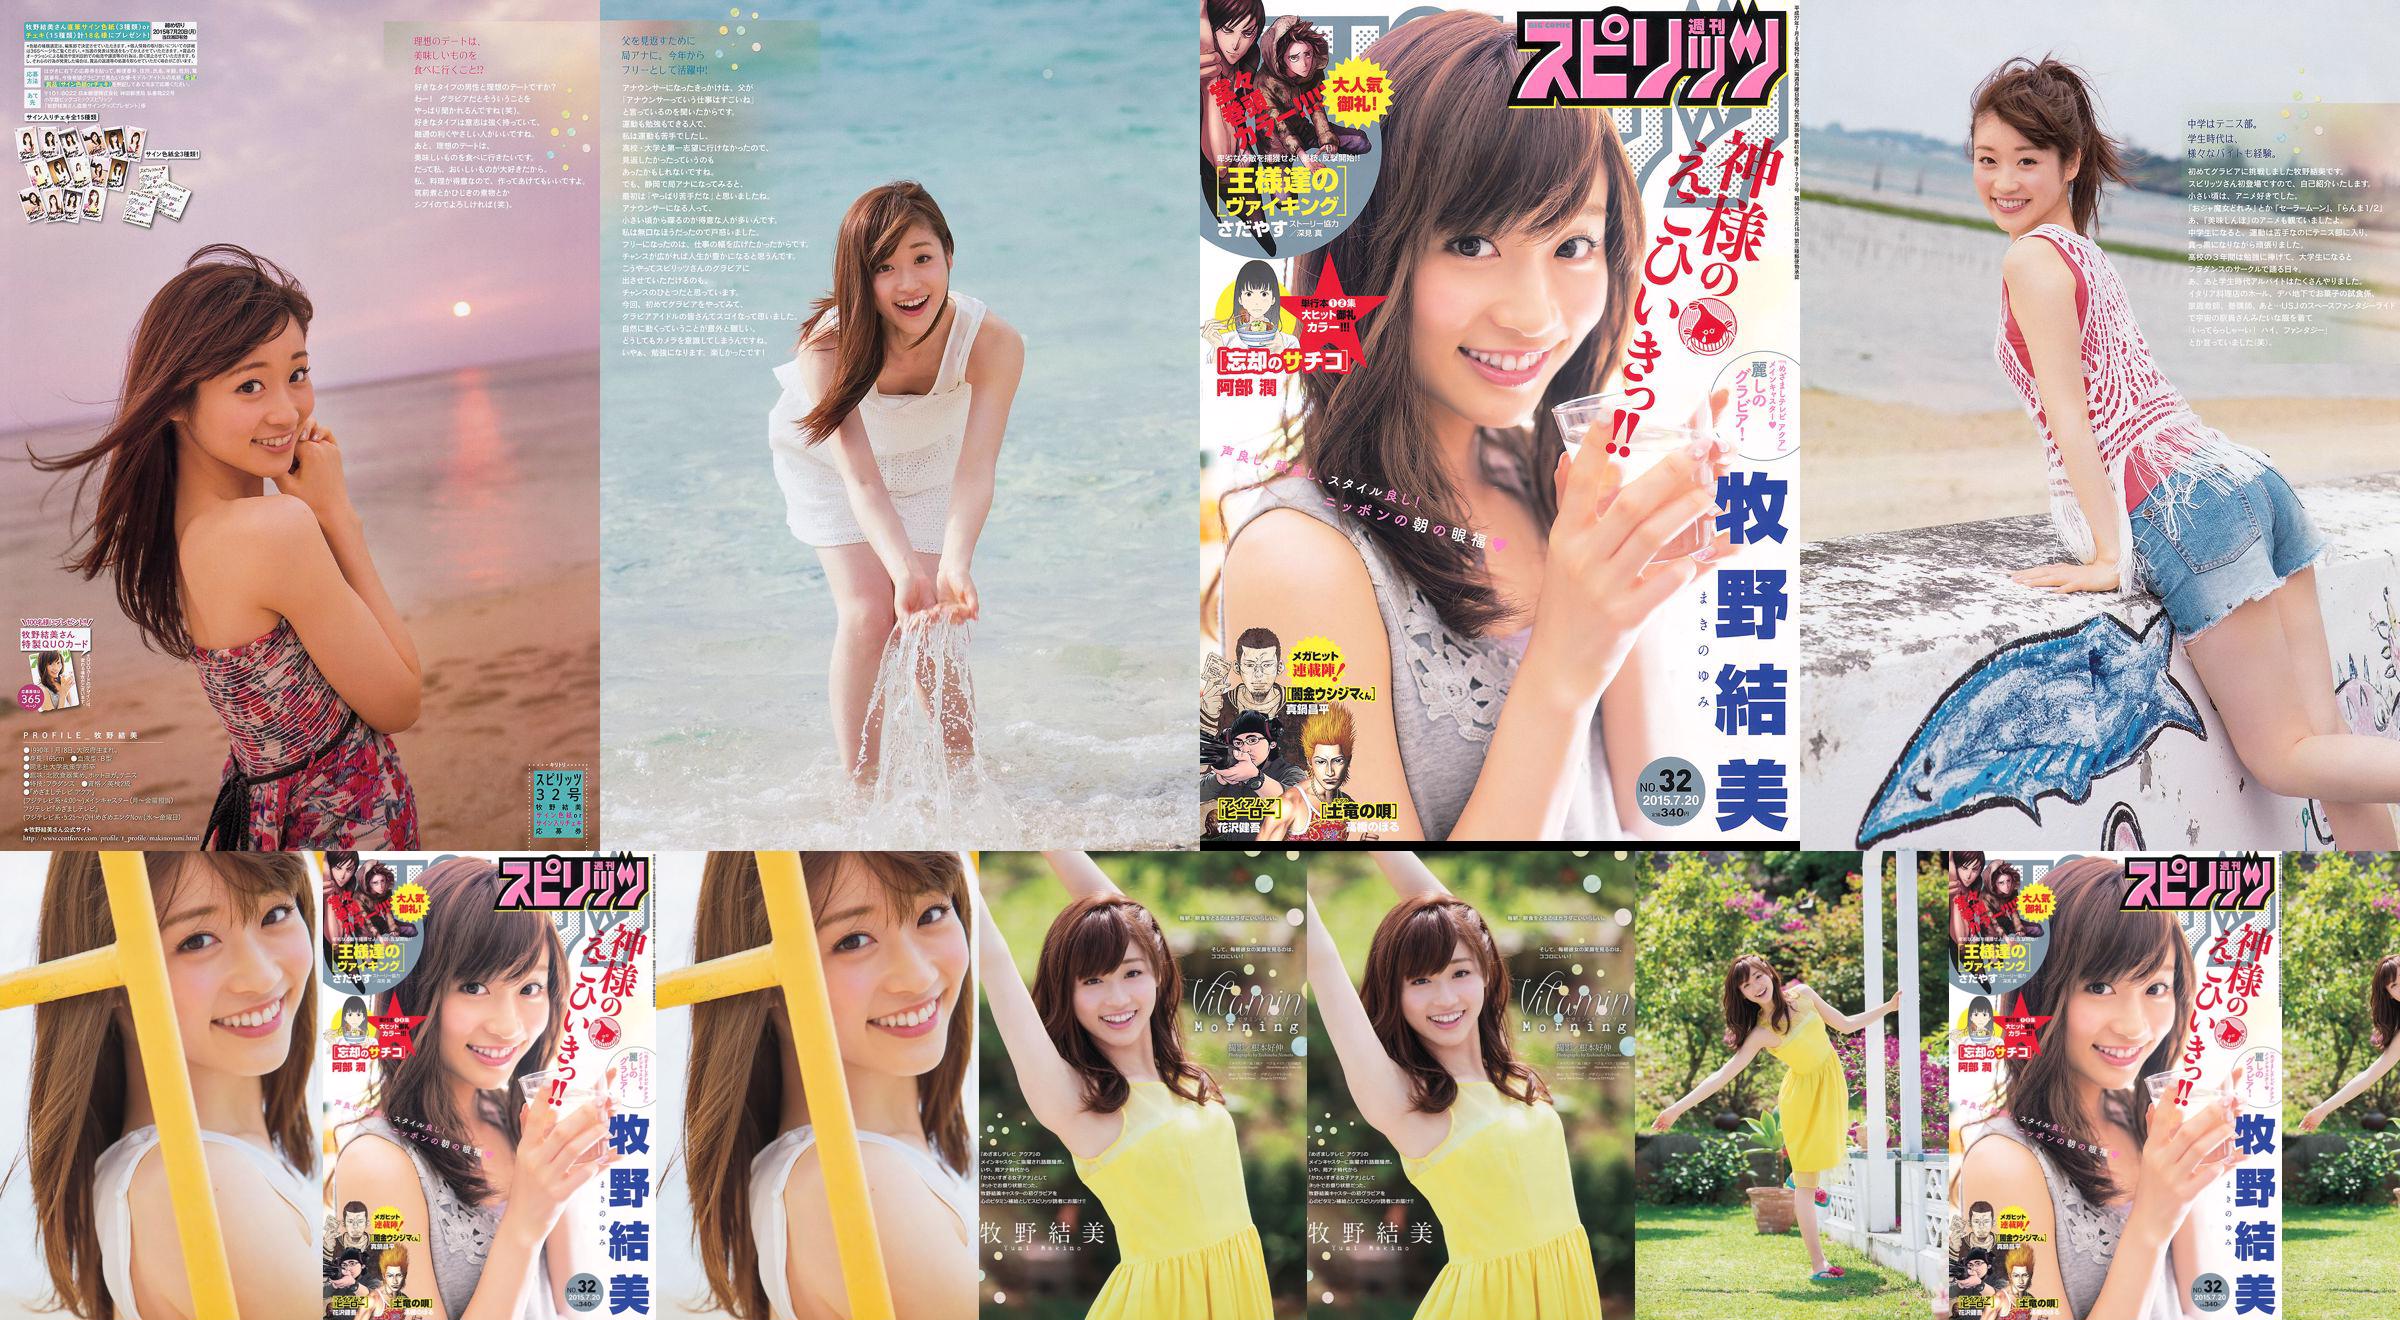 [Weekly Big Comic Spirits] Yumi Makino 2015 No.32 Photo Magazine No.19ff2e Página 2